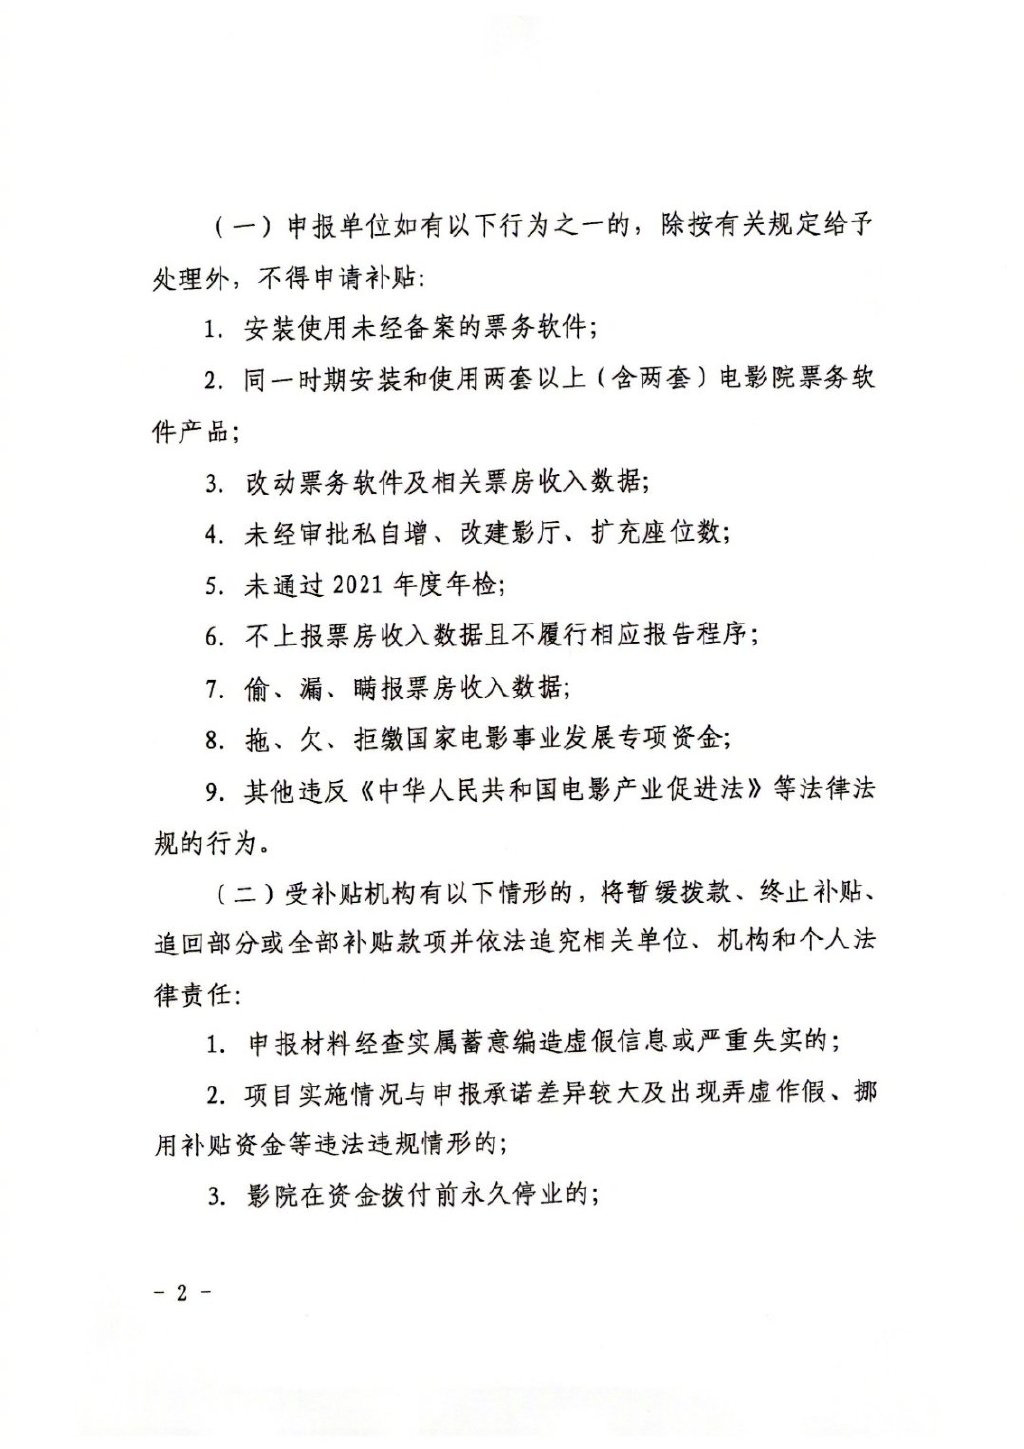 上海电影局发布通知：电影院可申请疫情停业补贴